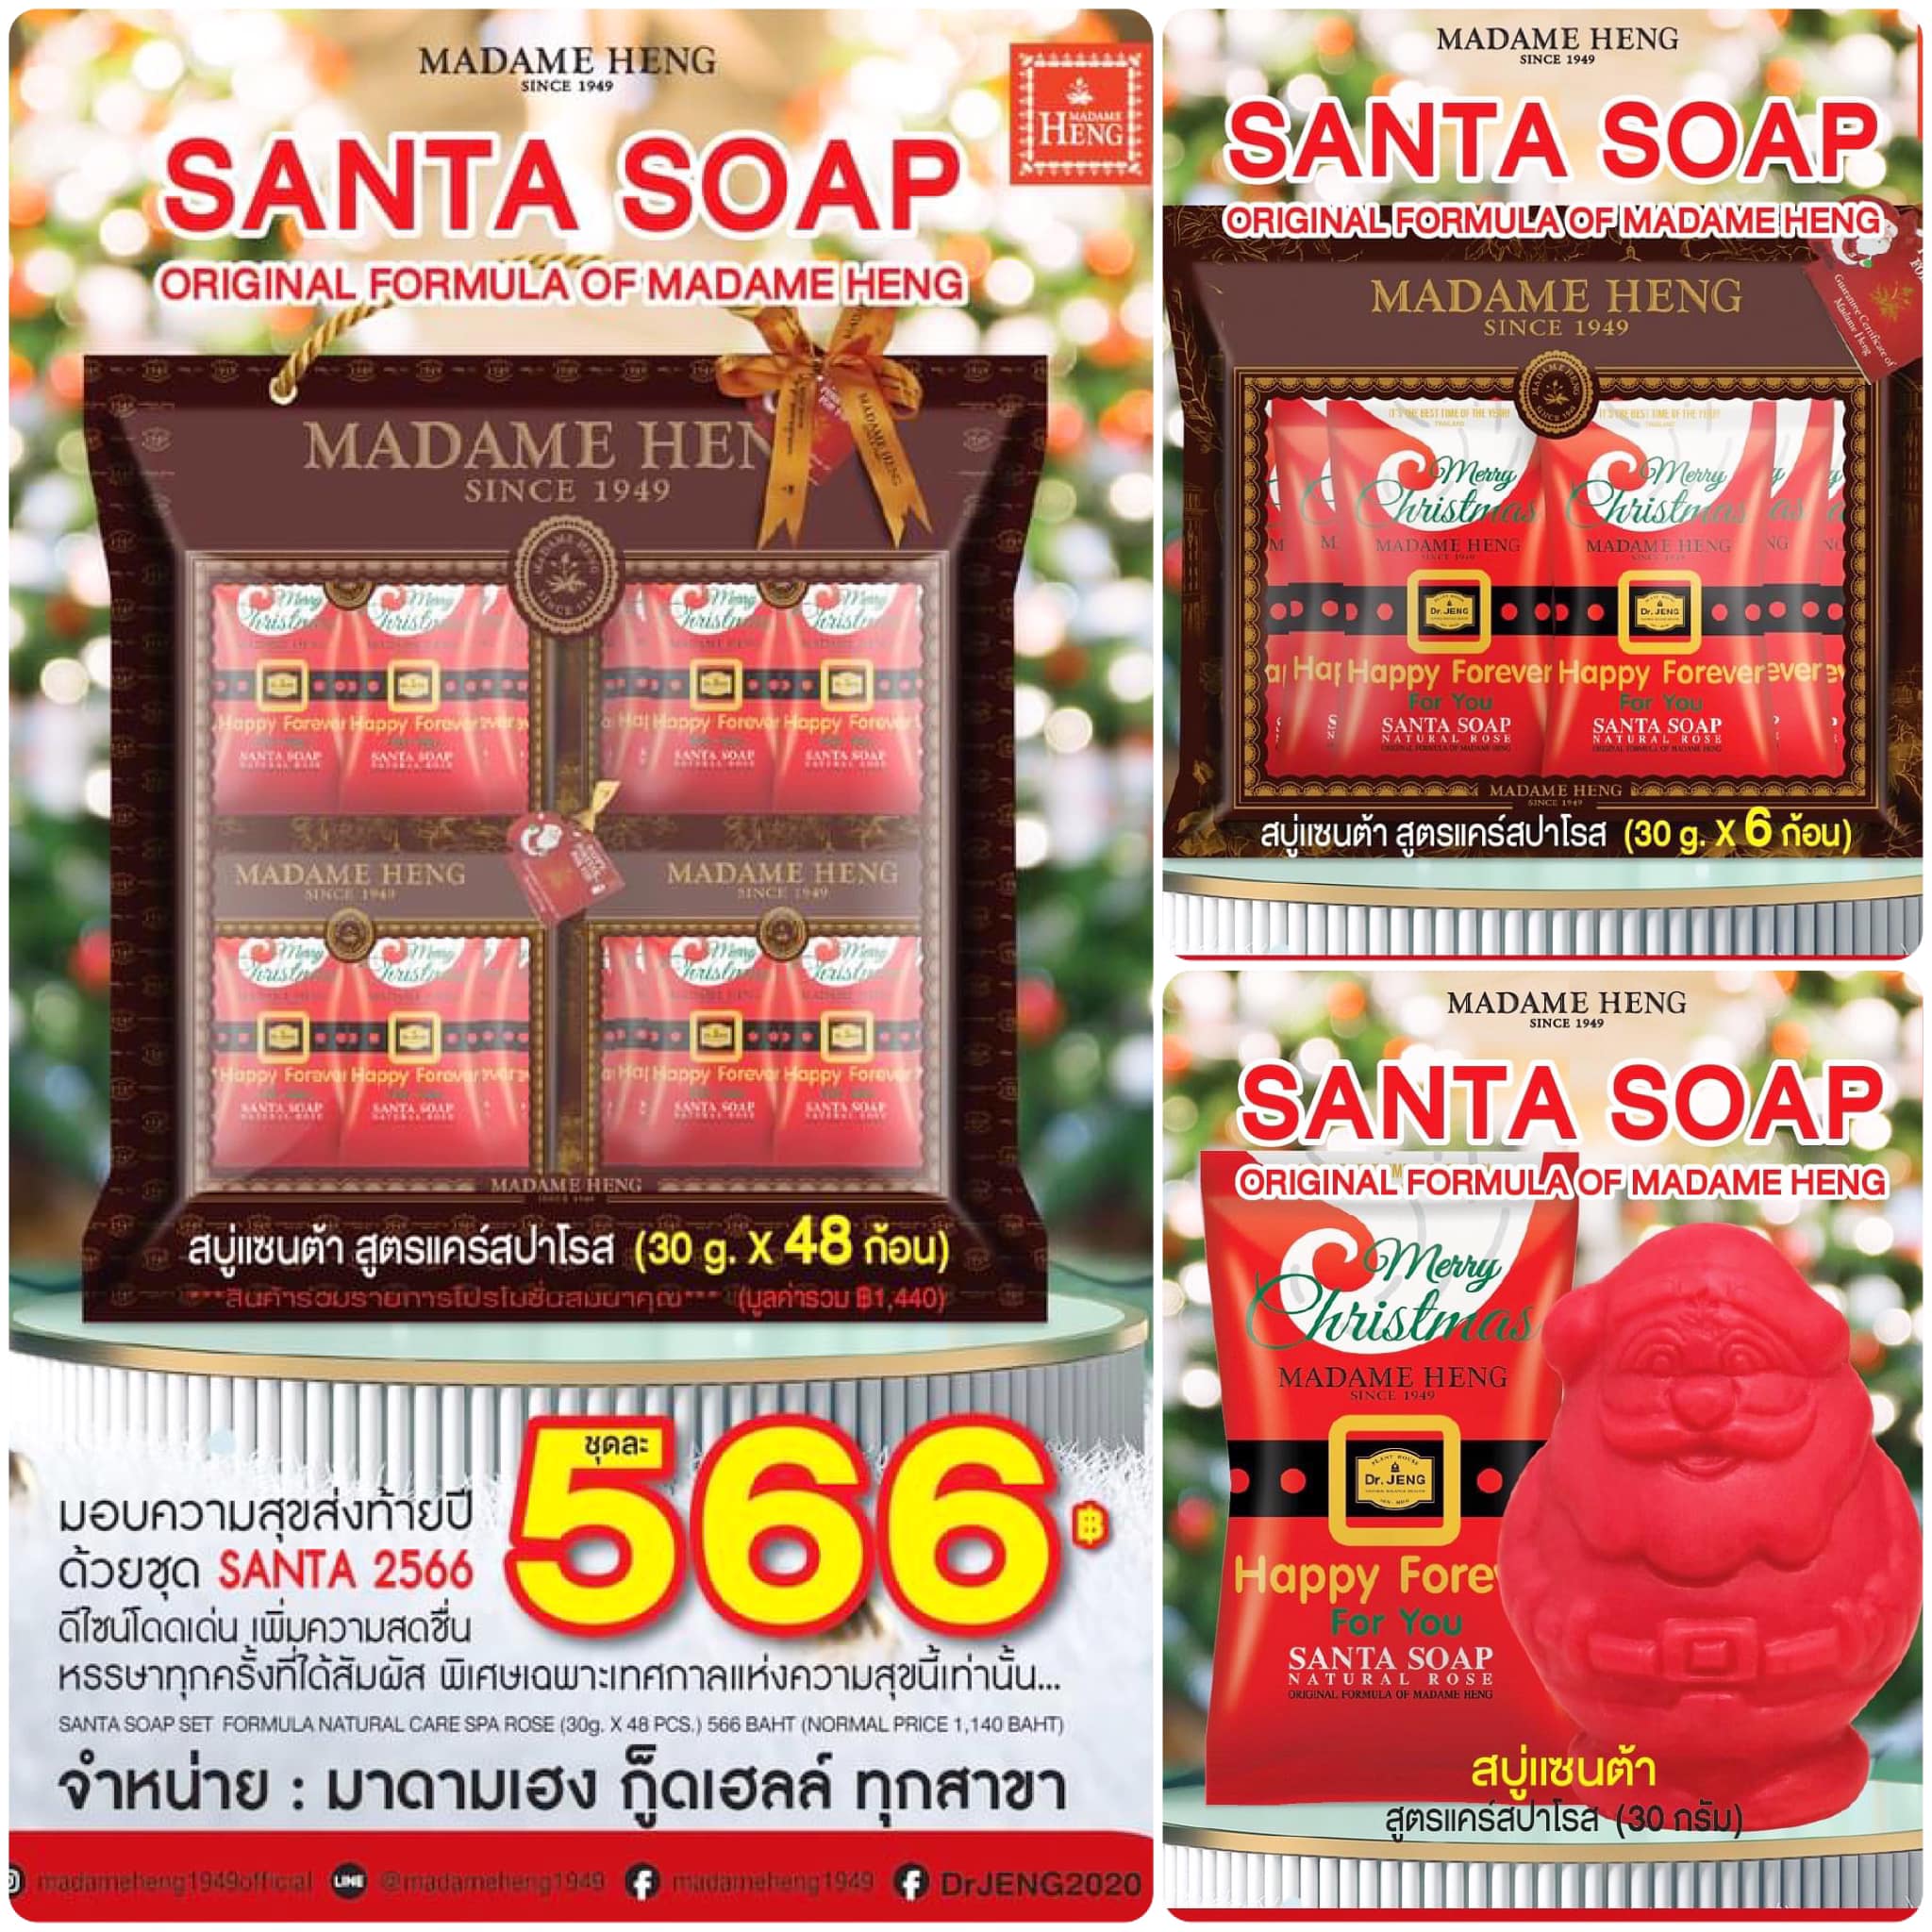 ชุดของขวัญสุดน่ารัก “SANTA SOAP 2566” จากร้านสบู่ MADAME HENG